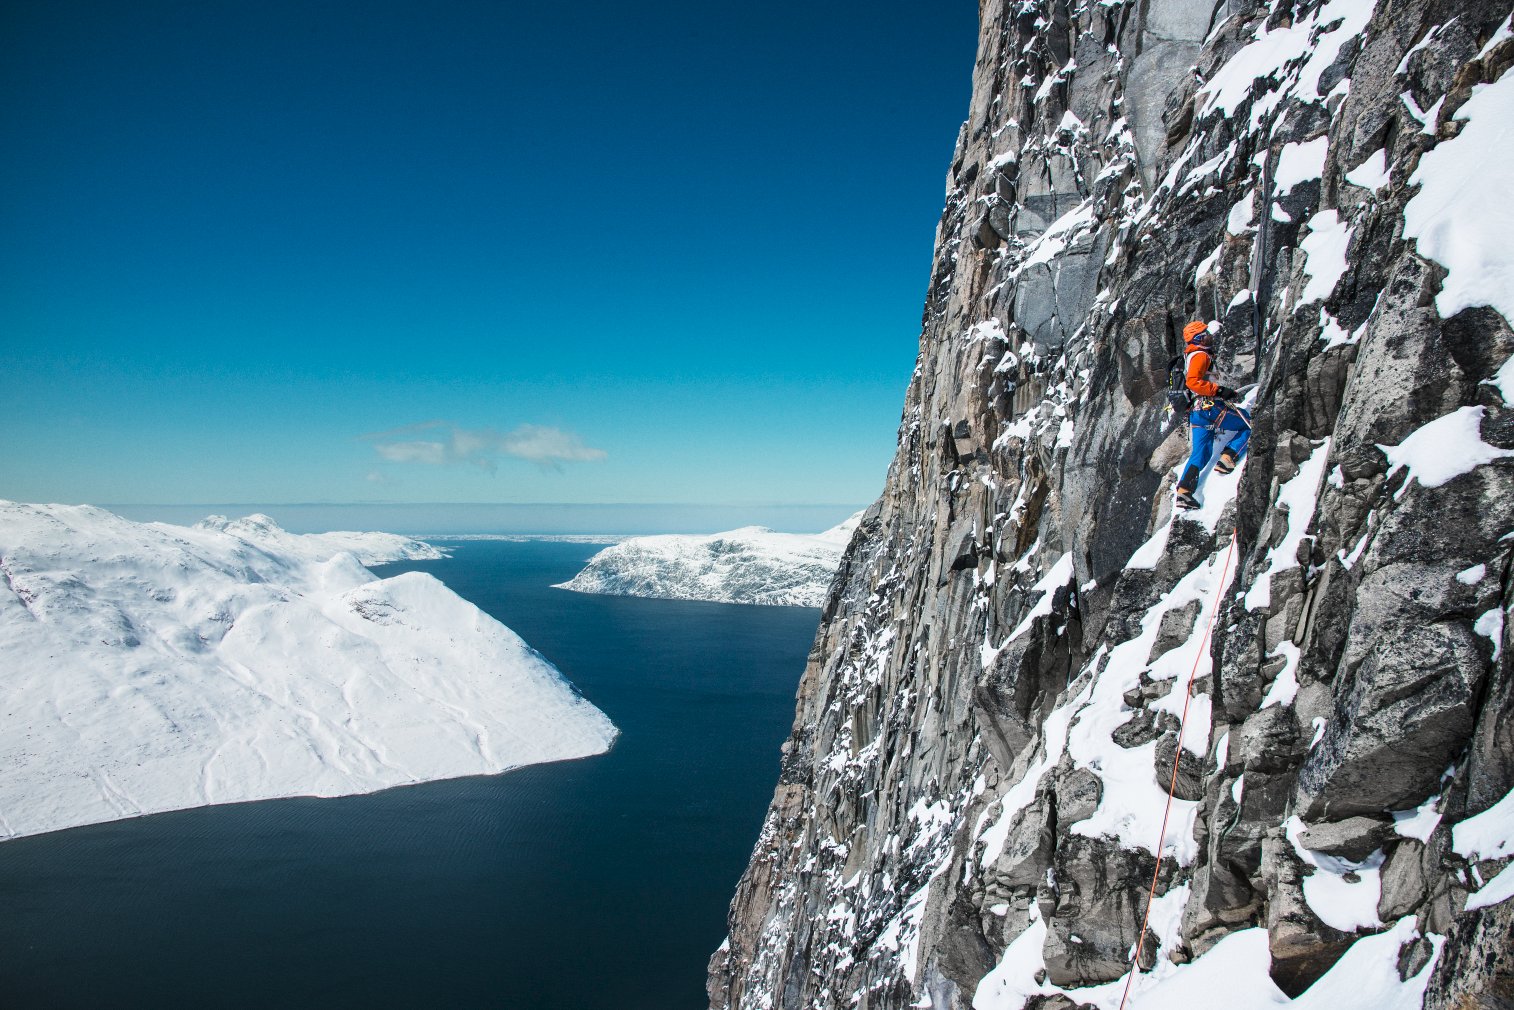 Skandinávie, to je například i zimní lezení nad hlubokými fjordy